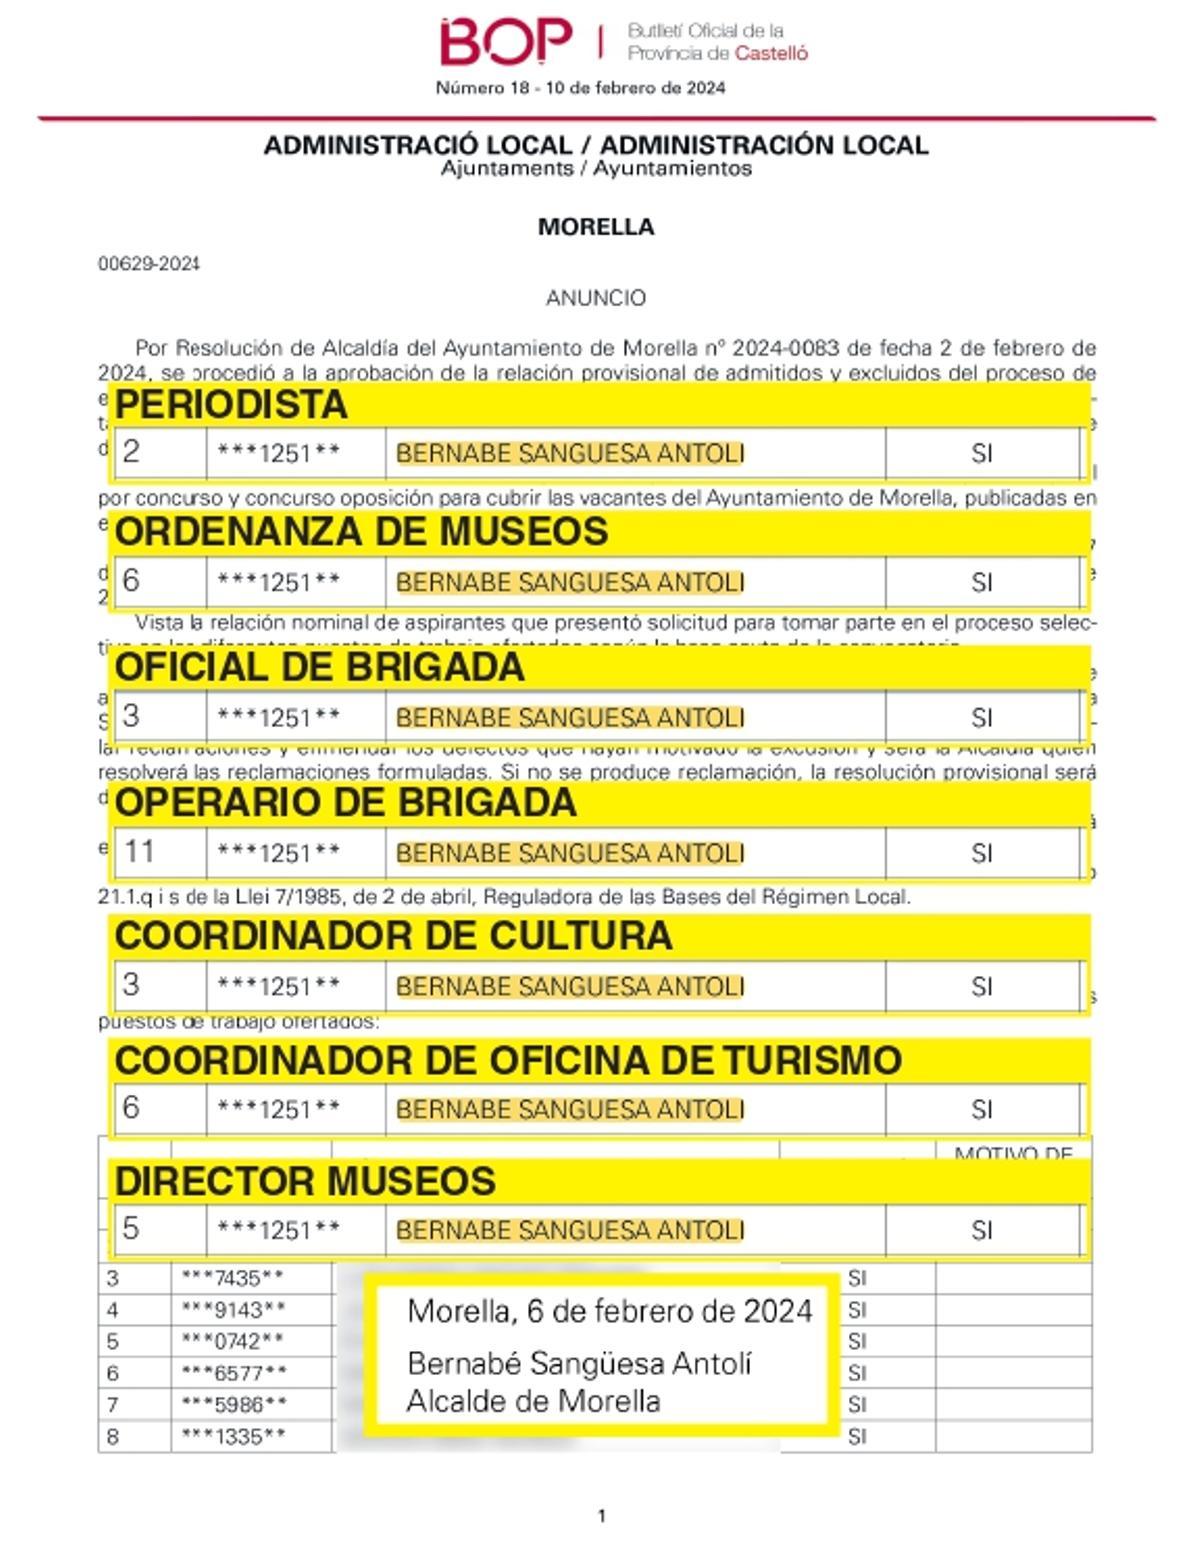 Los 7 puestos de trabajo a los que se ha presentado el alcalde de Morella.